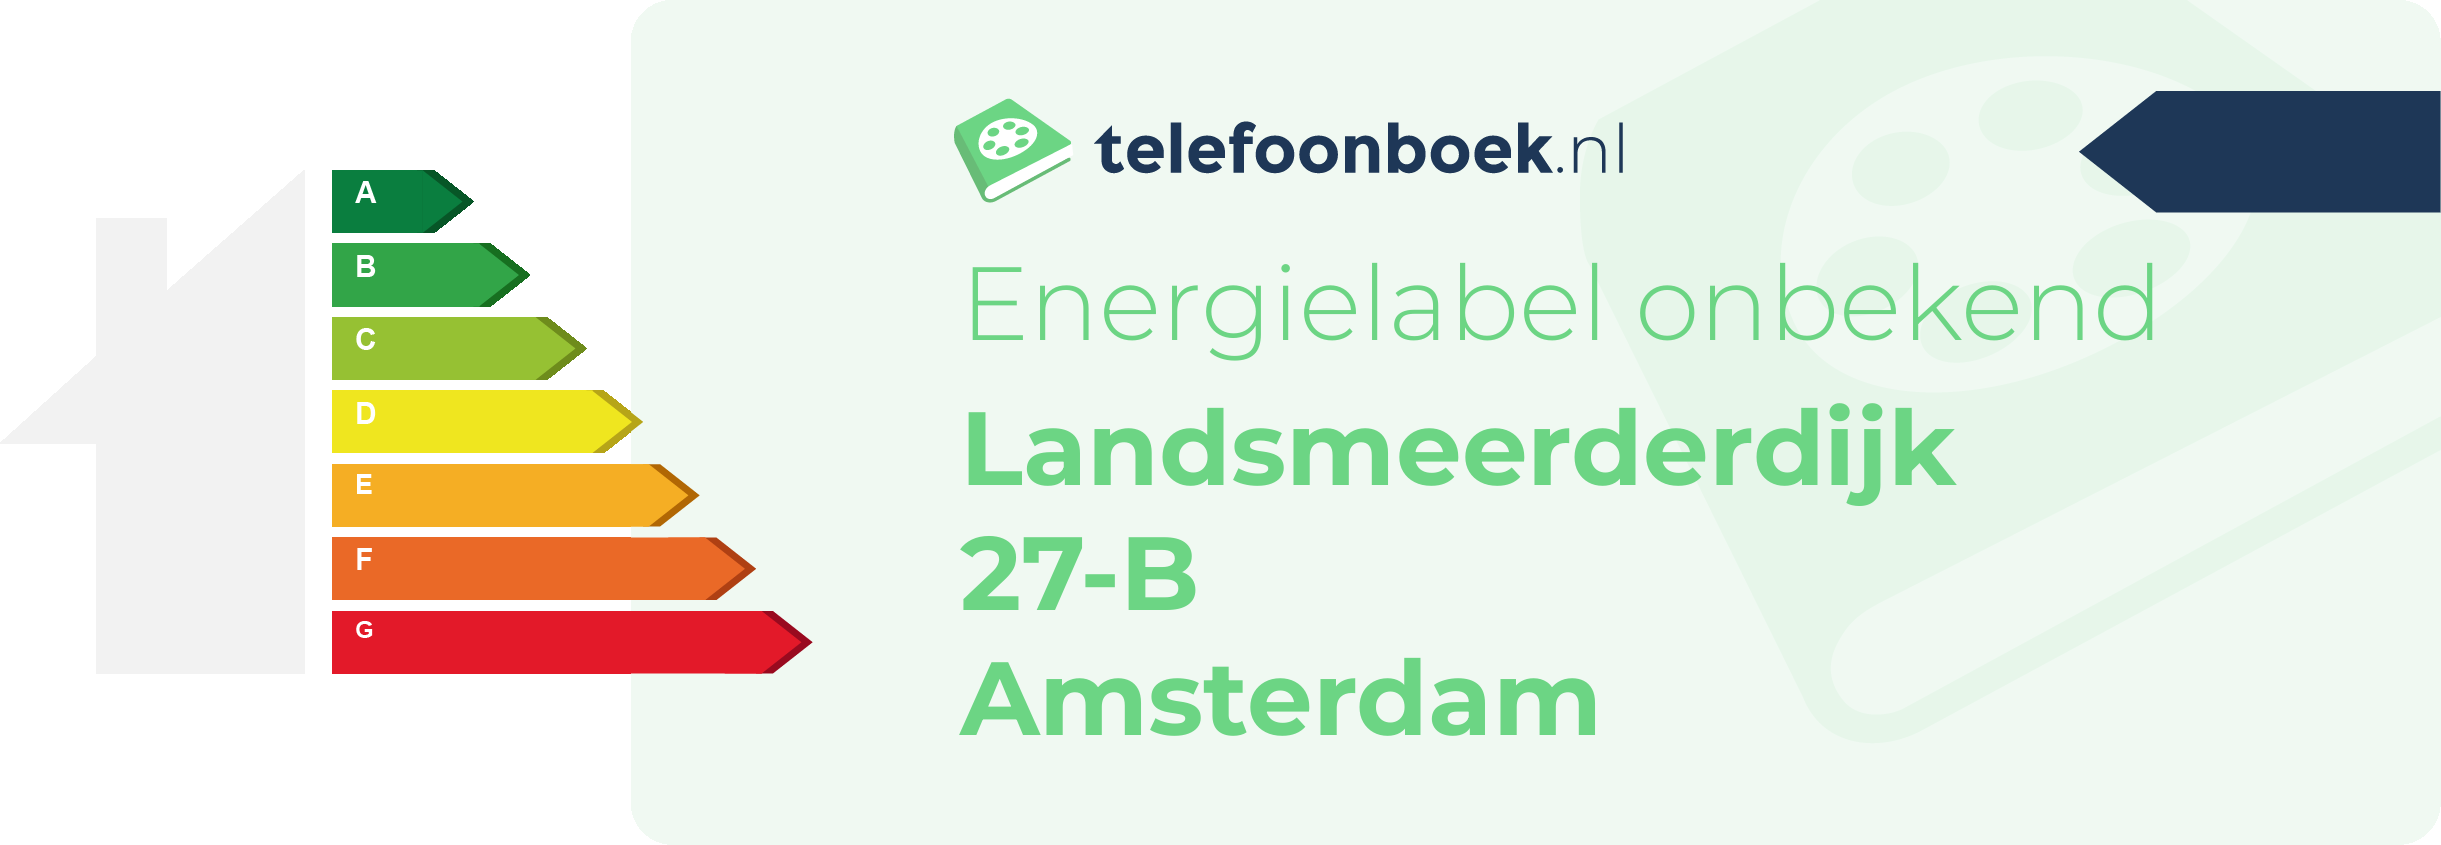 Energielabel Landsmeerderdijk 27-B Amsterdam